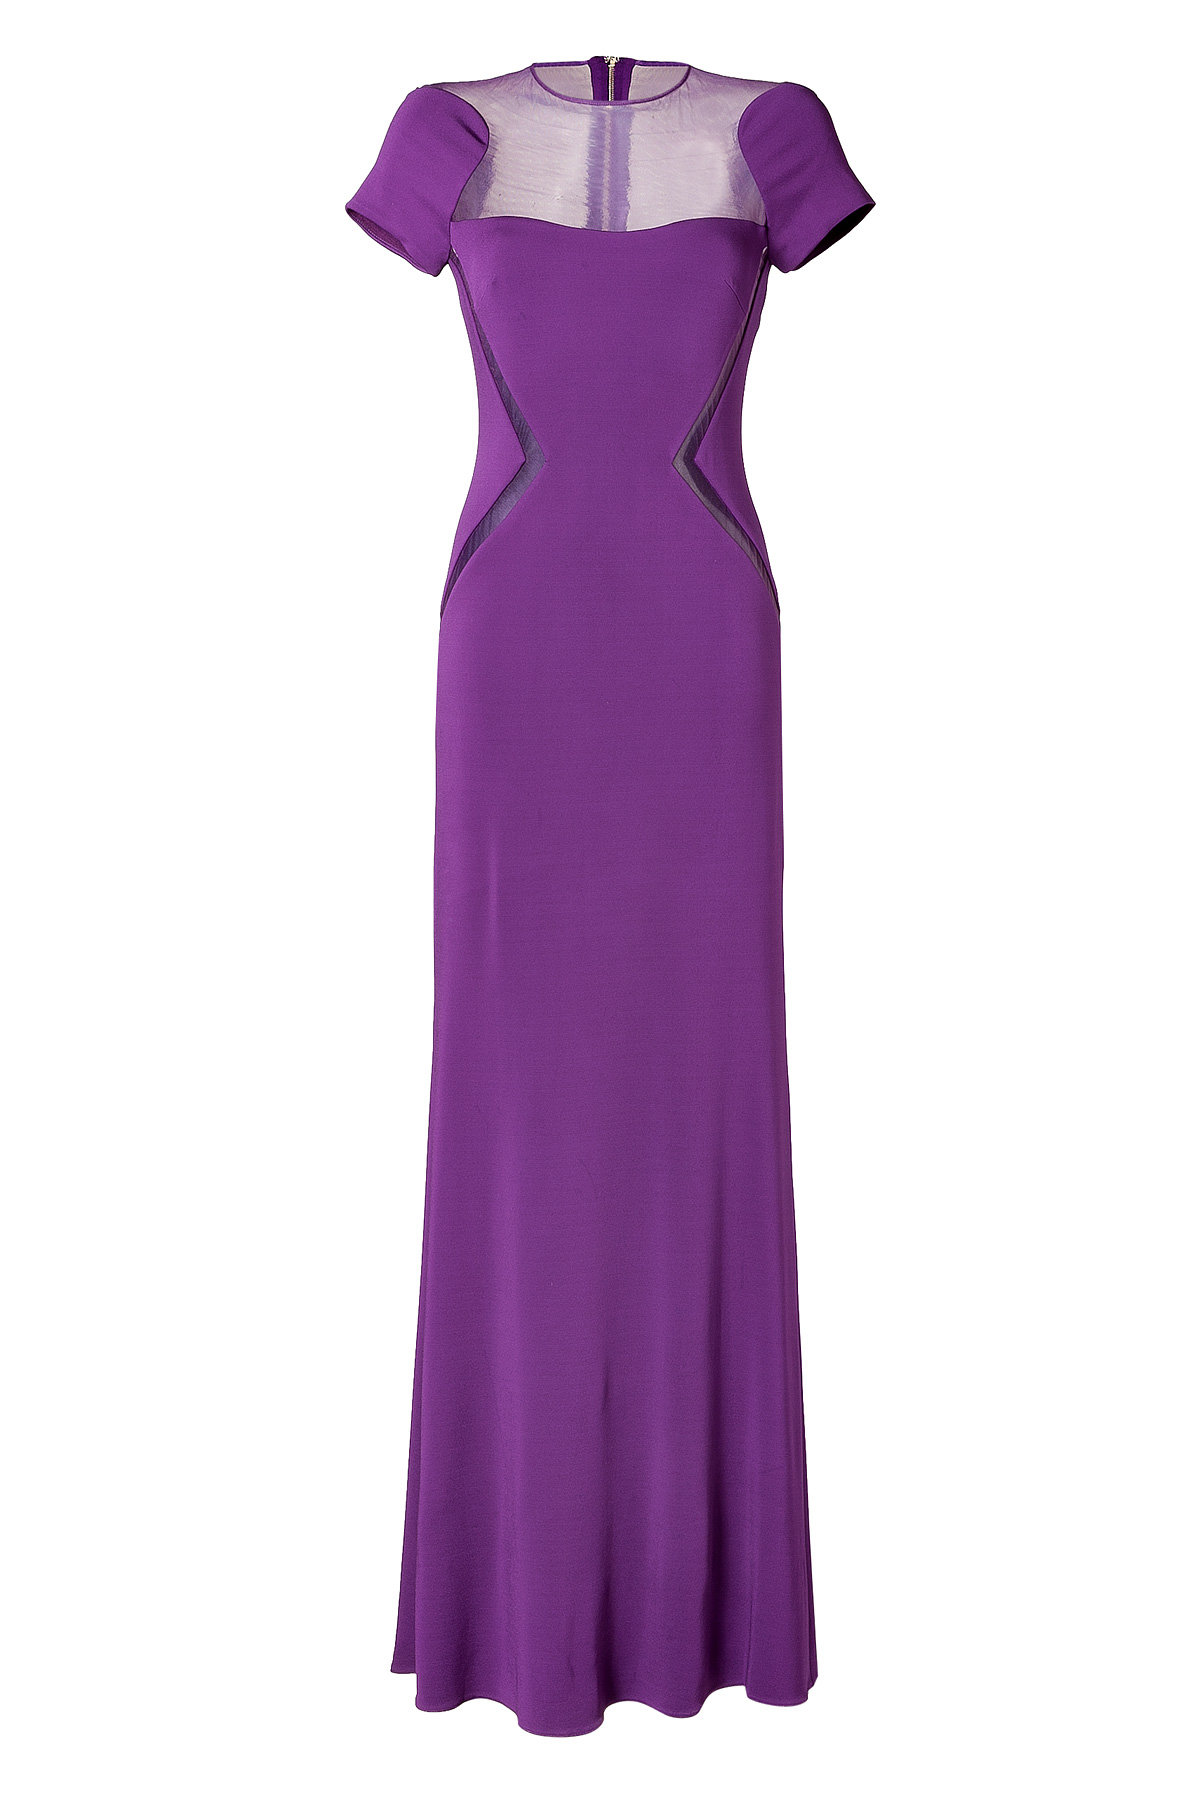 Elie Saab - Sheer Panel Gown in Royal Purple